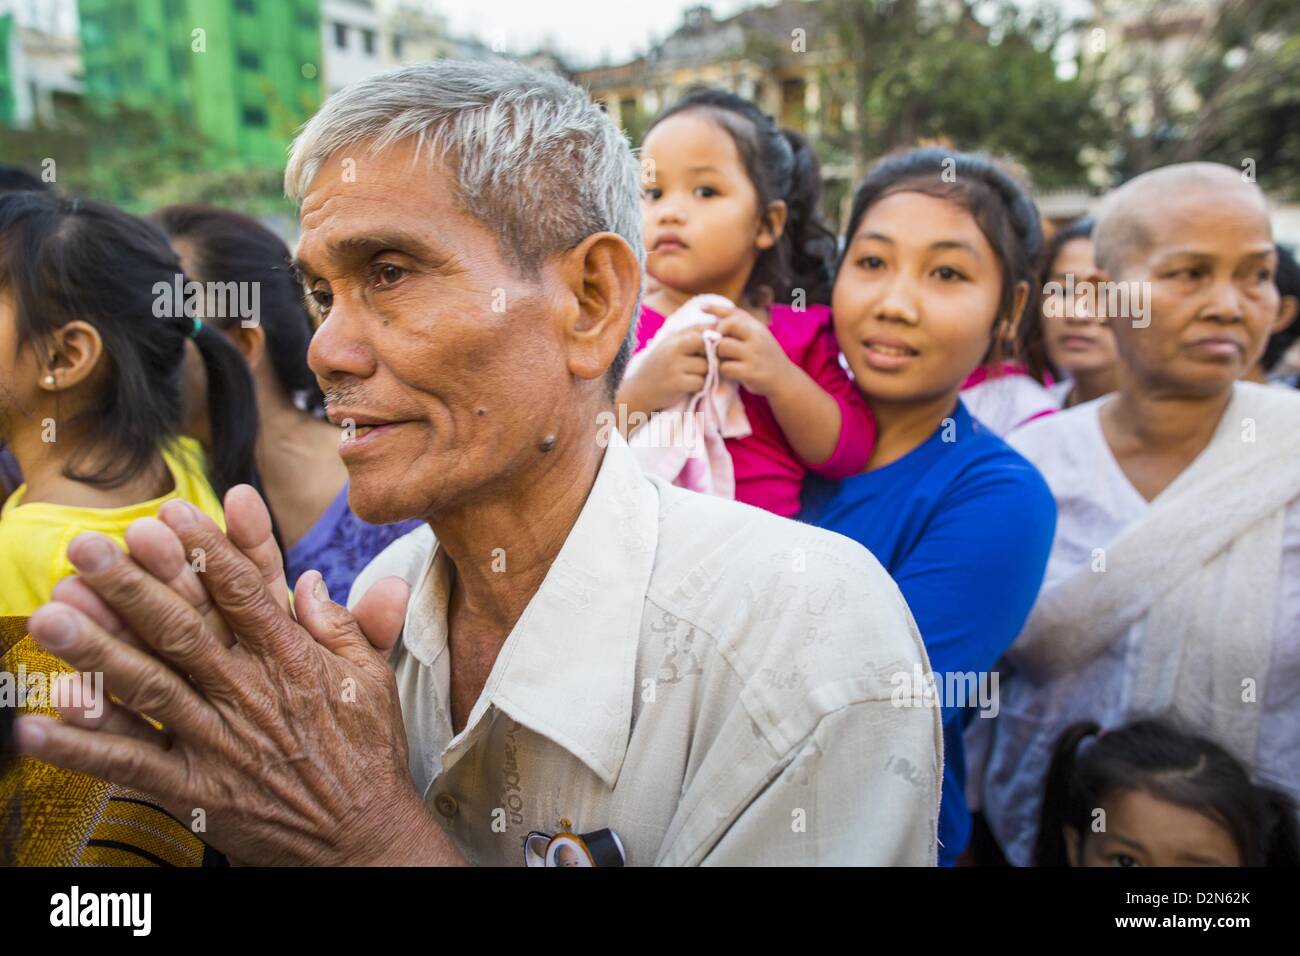 Gen 29, 2013 - Phnom Penh Cambogia - Lutto si radunano davanti al Palazzo Reale durante il periodo del lutto per Norodom Sihanouk. Sihanouk è morto a Pechino in Cina, dove egli stava ricevendo le cure mediche, ad Ottobre 15, 2012. La sua cremazione è prevista per febbraio 4, 2013. Oltre un milione di persone parteciperanno al servizio. (Credito Immagine: © Jack Kurtz/ZUMAPRESS.com) Foto Stock